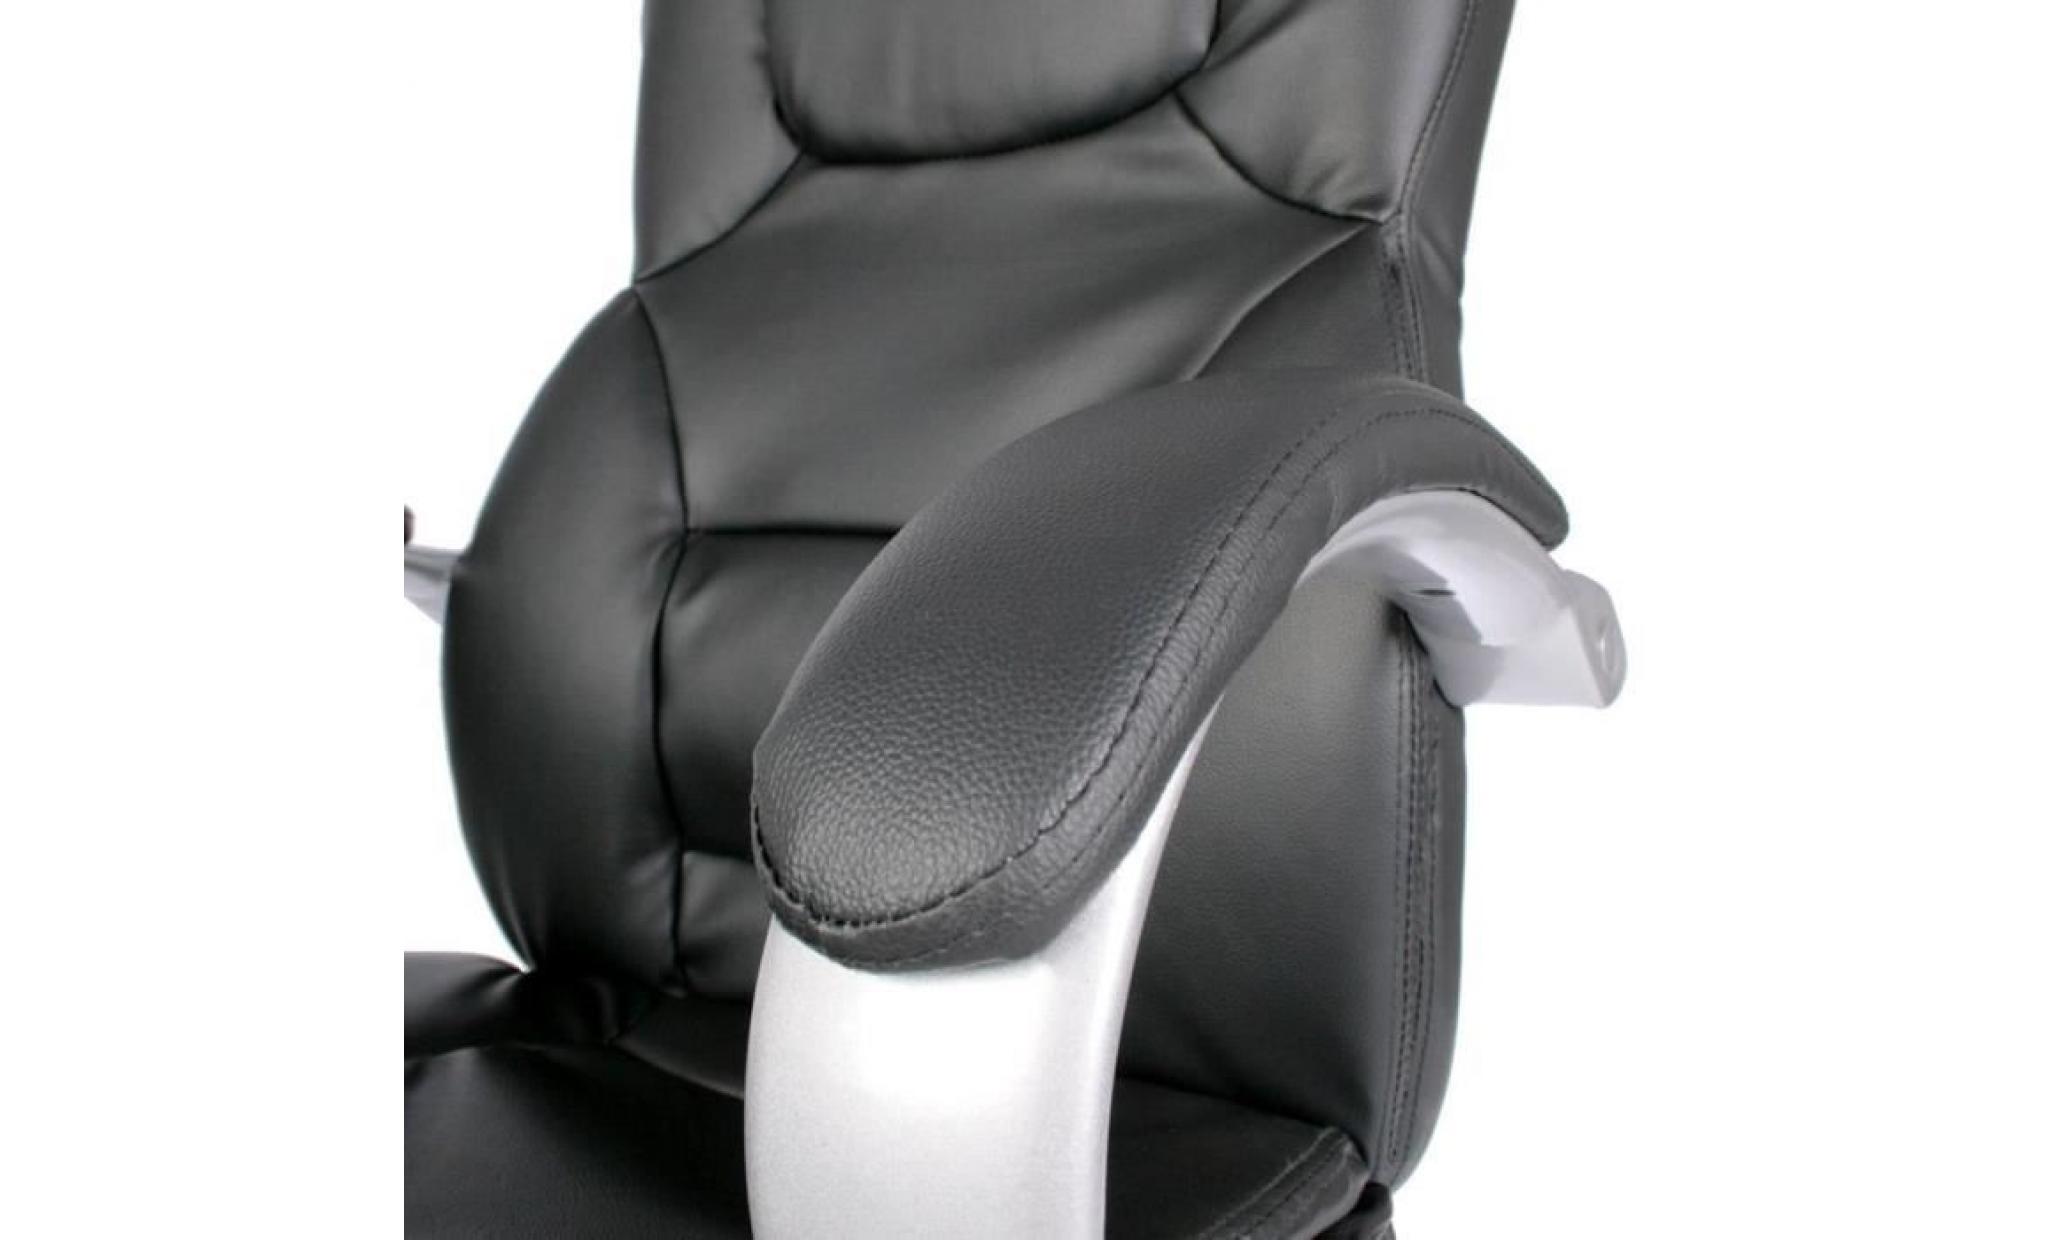 chaise de bureau en noir fauteuil ergonomique cuir synthétique pas cher